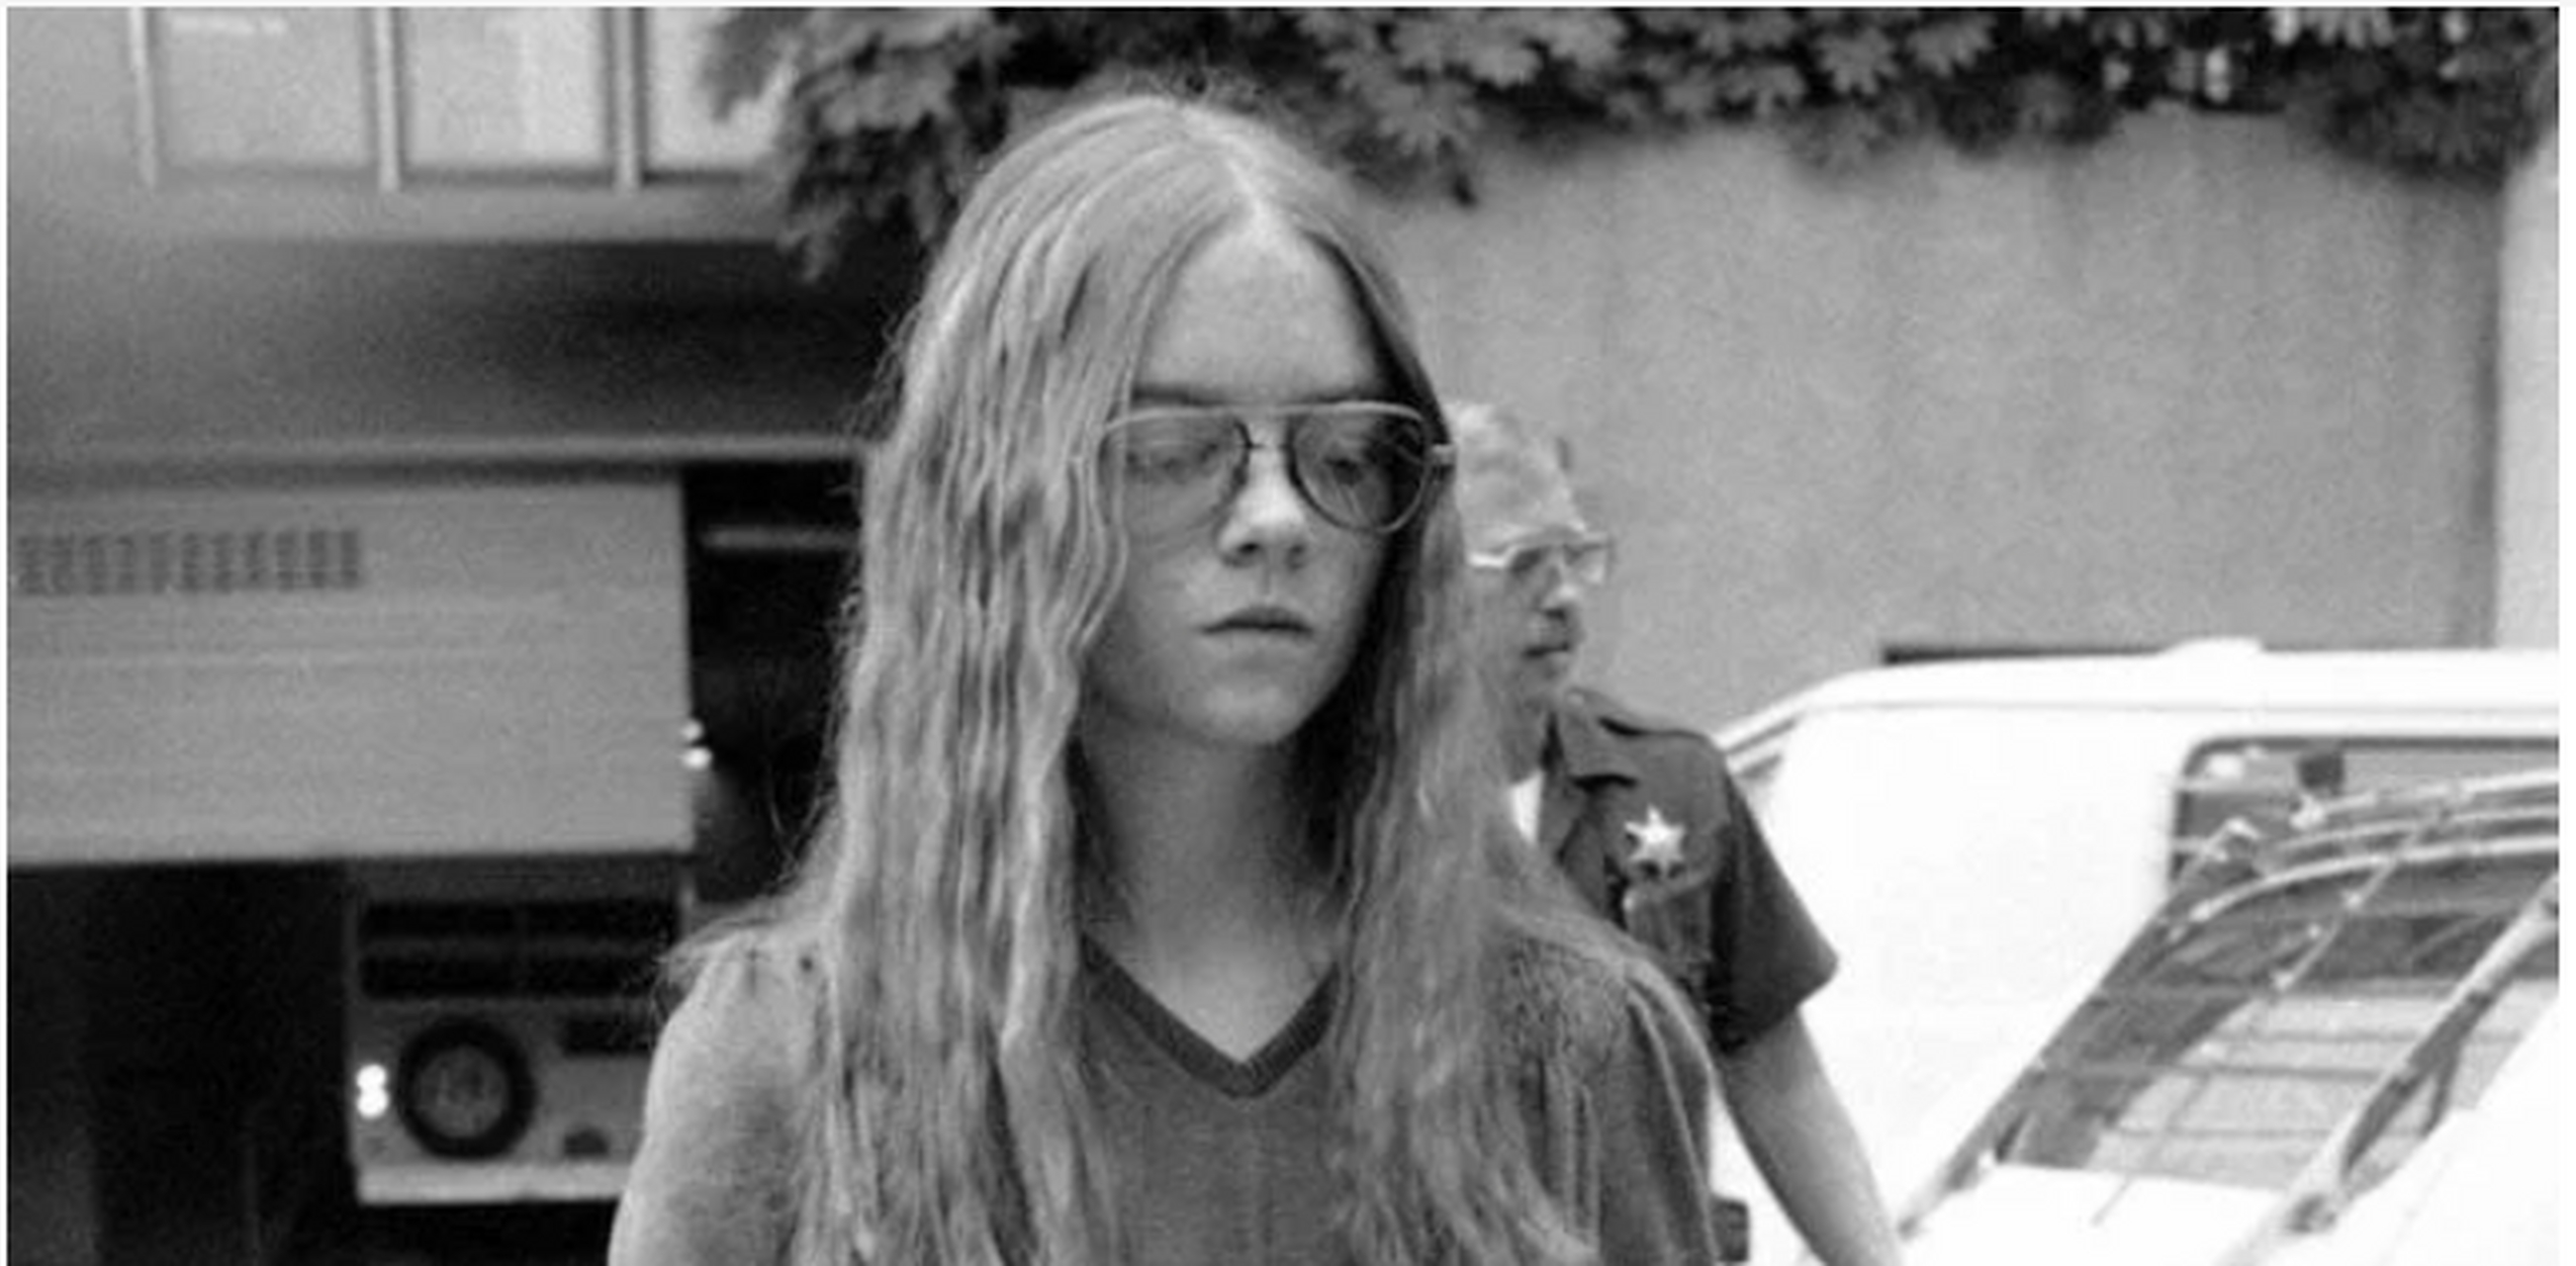 1979年,美国女子布伦达·斯宾塞被捕时,她留下了一些照片